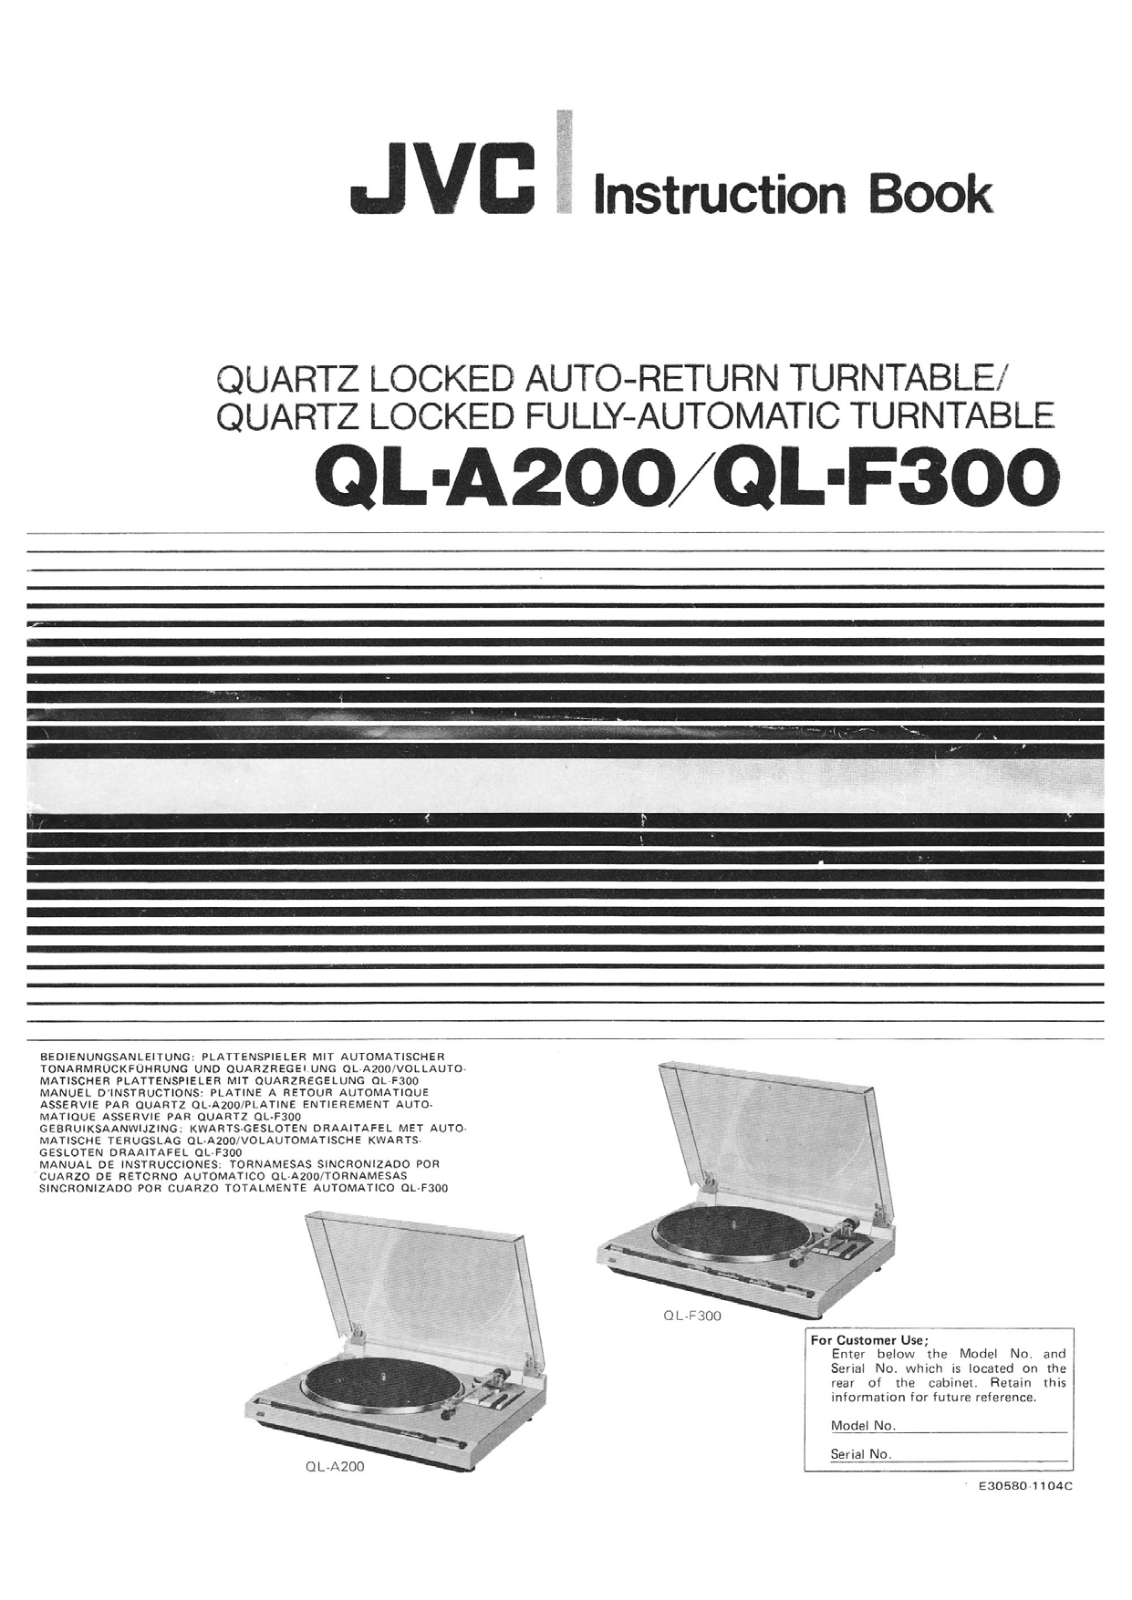 Jvc QL-A200 Owners Manual